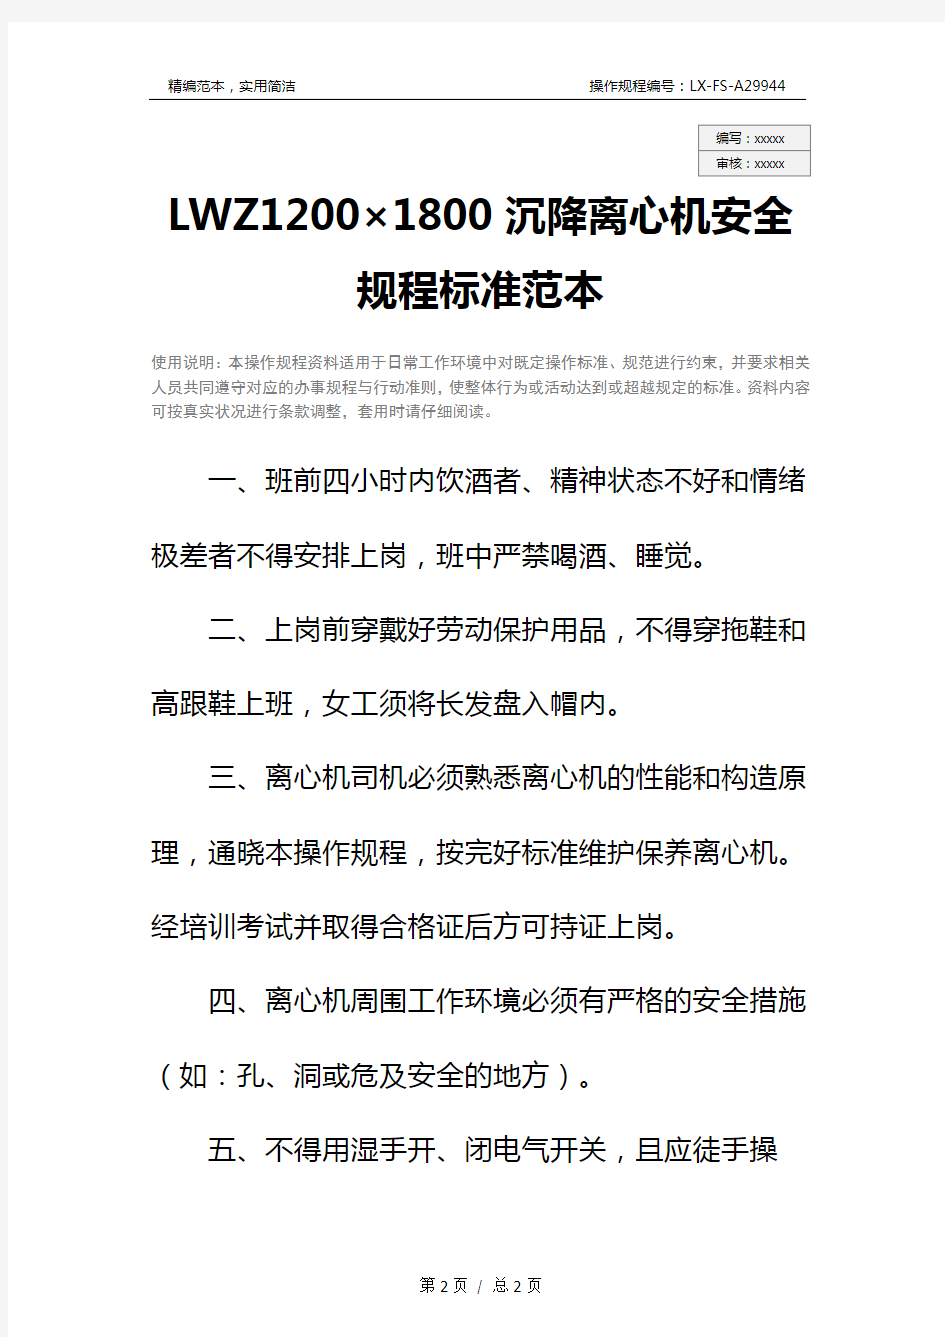 LWZ1200×1800沉降离心机安全规程标准范本